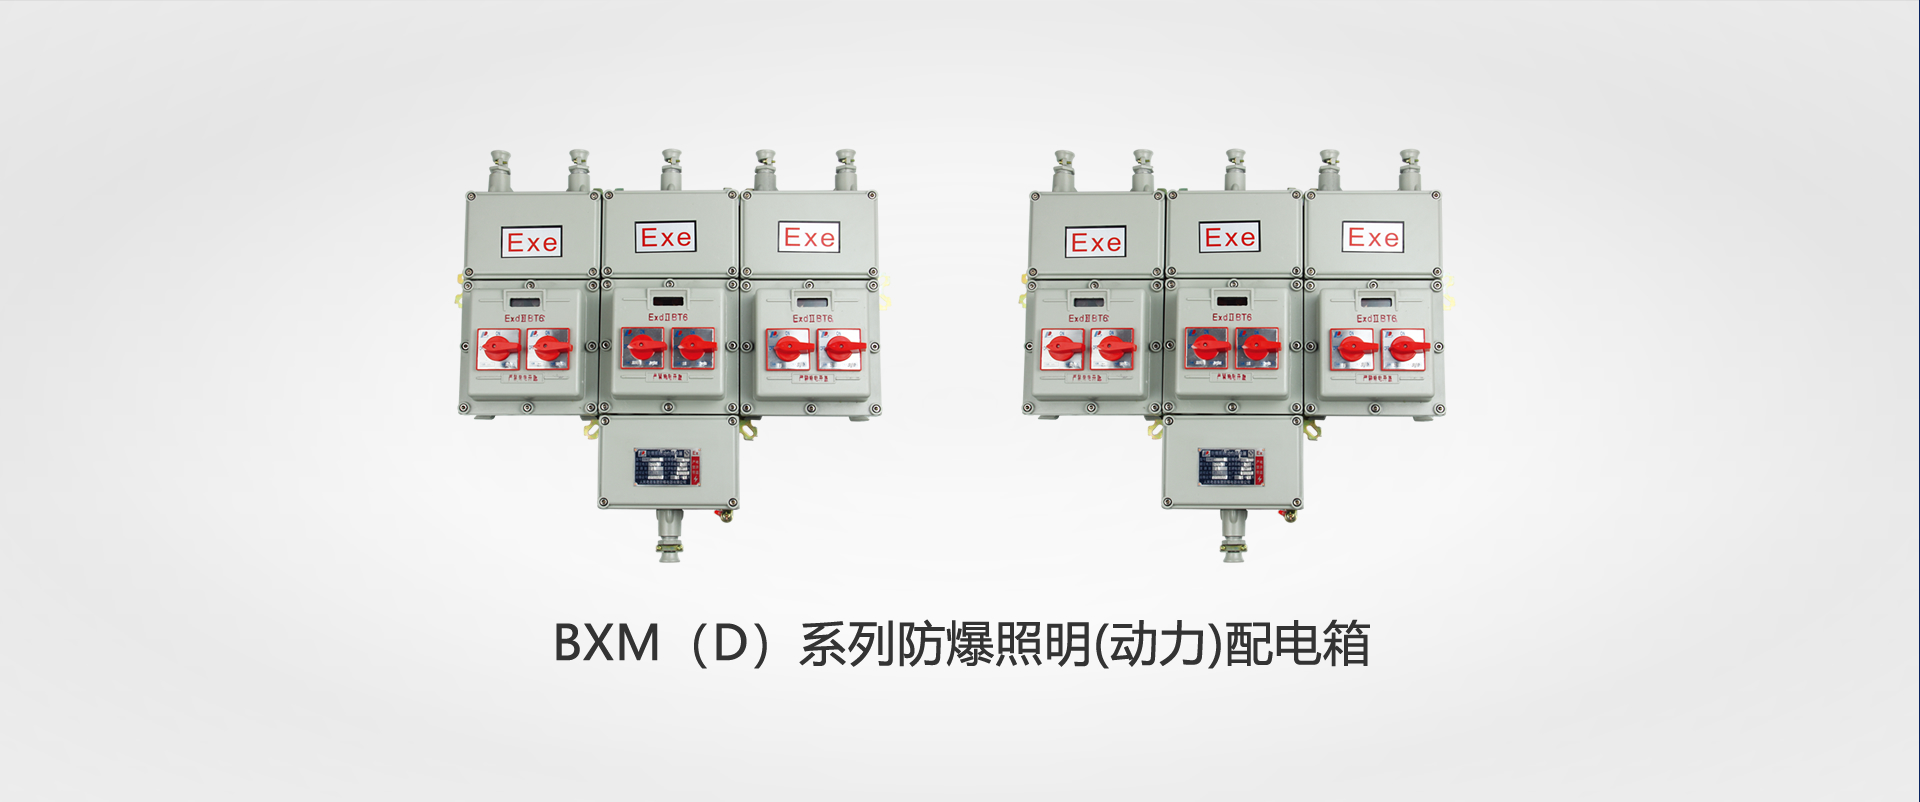 BXM（D）系(xi)列防爆照明(動力(li))配電箱